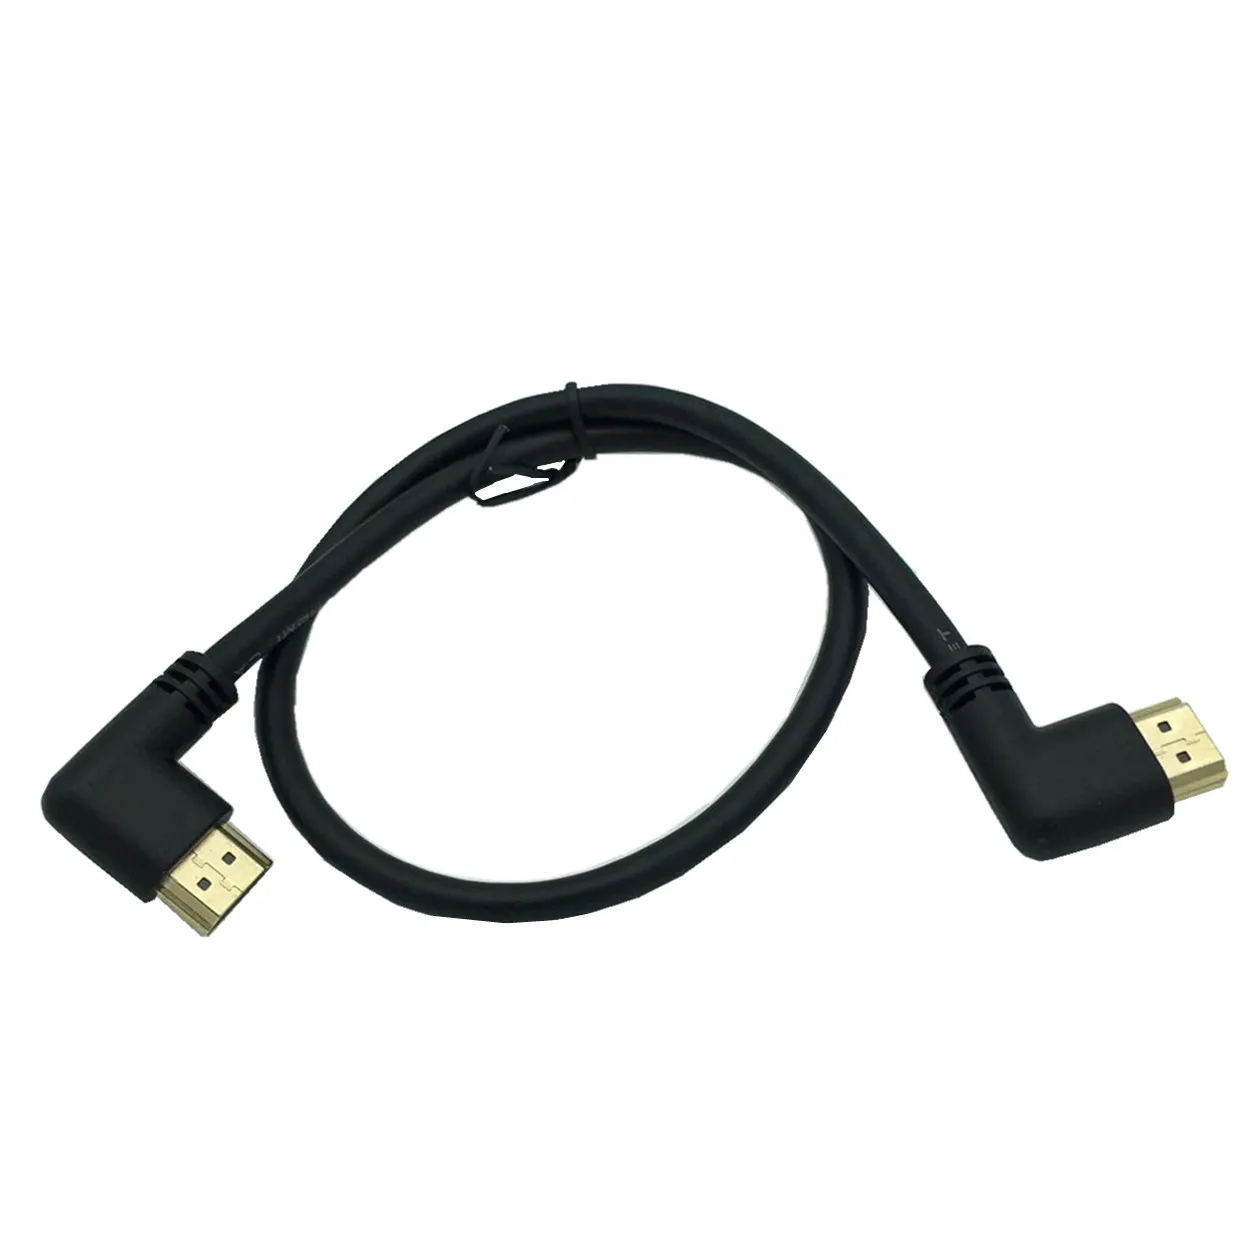 La stânga sau la Dreapta în Unghi compatibil HDMI de sex Masculin la Dreapta la Stânga Cot de sex Masculin Cablu de extensie 15cm 1m 50cm, 2.0 V unghi cablu 4K*2K @60HZ 5